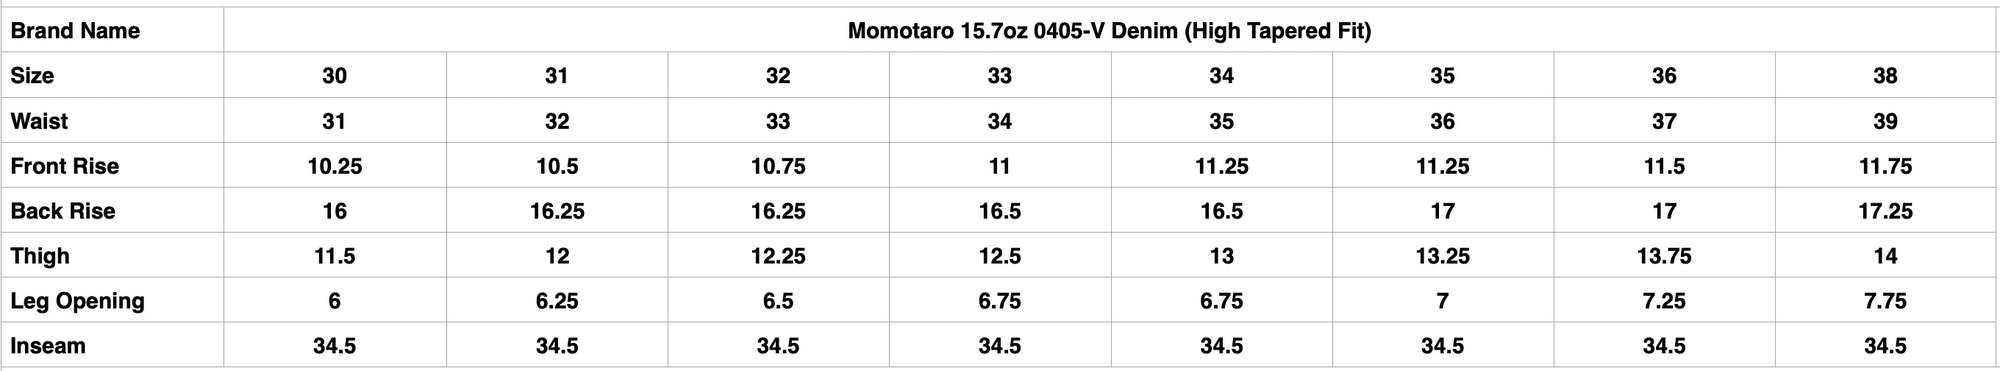 Momotaro 15.7oz 0405-V Denim (High Tapered Fit)